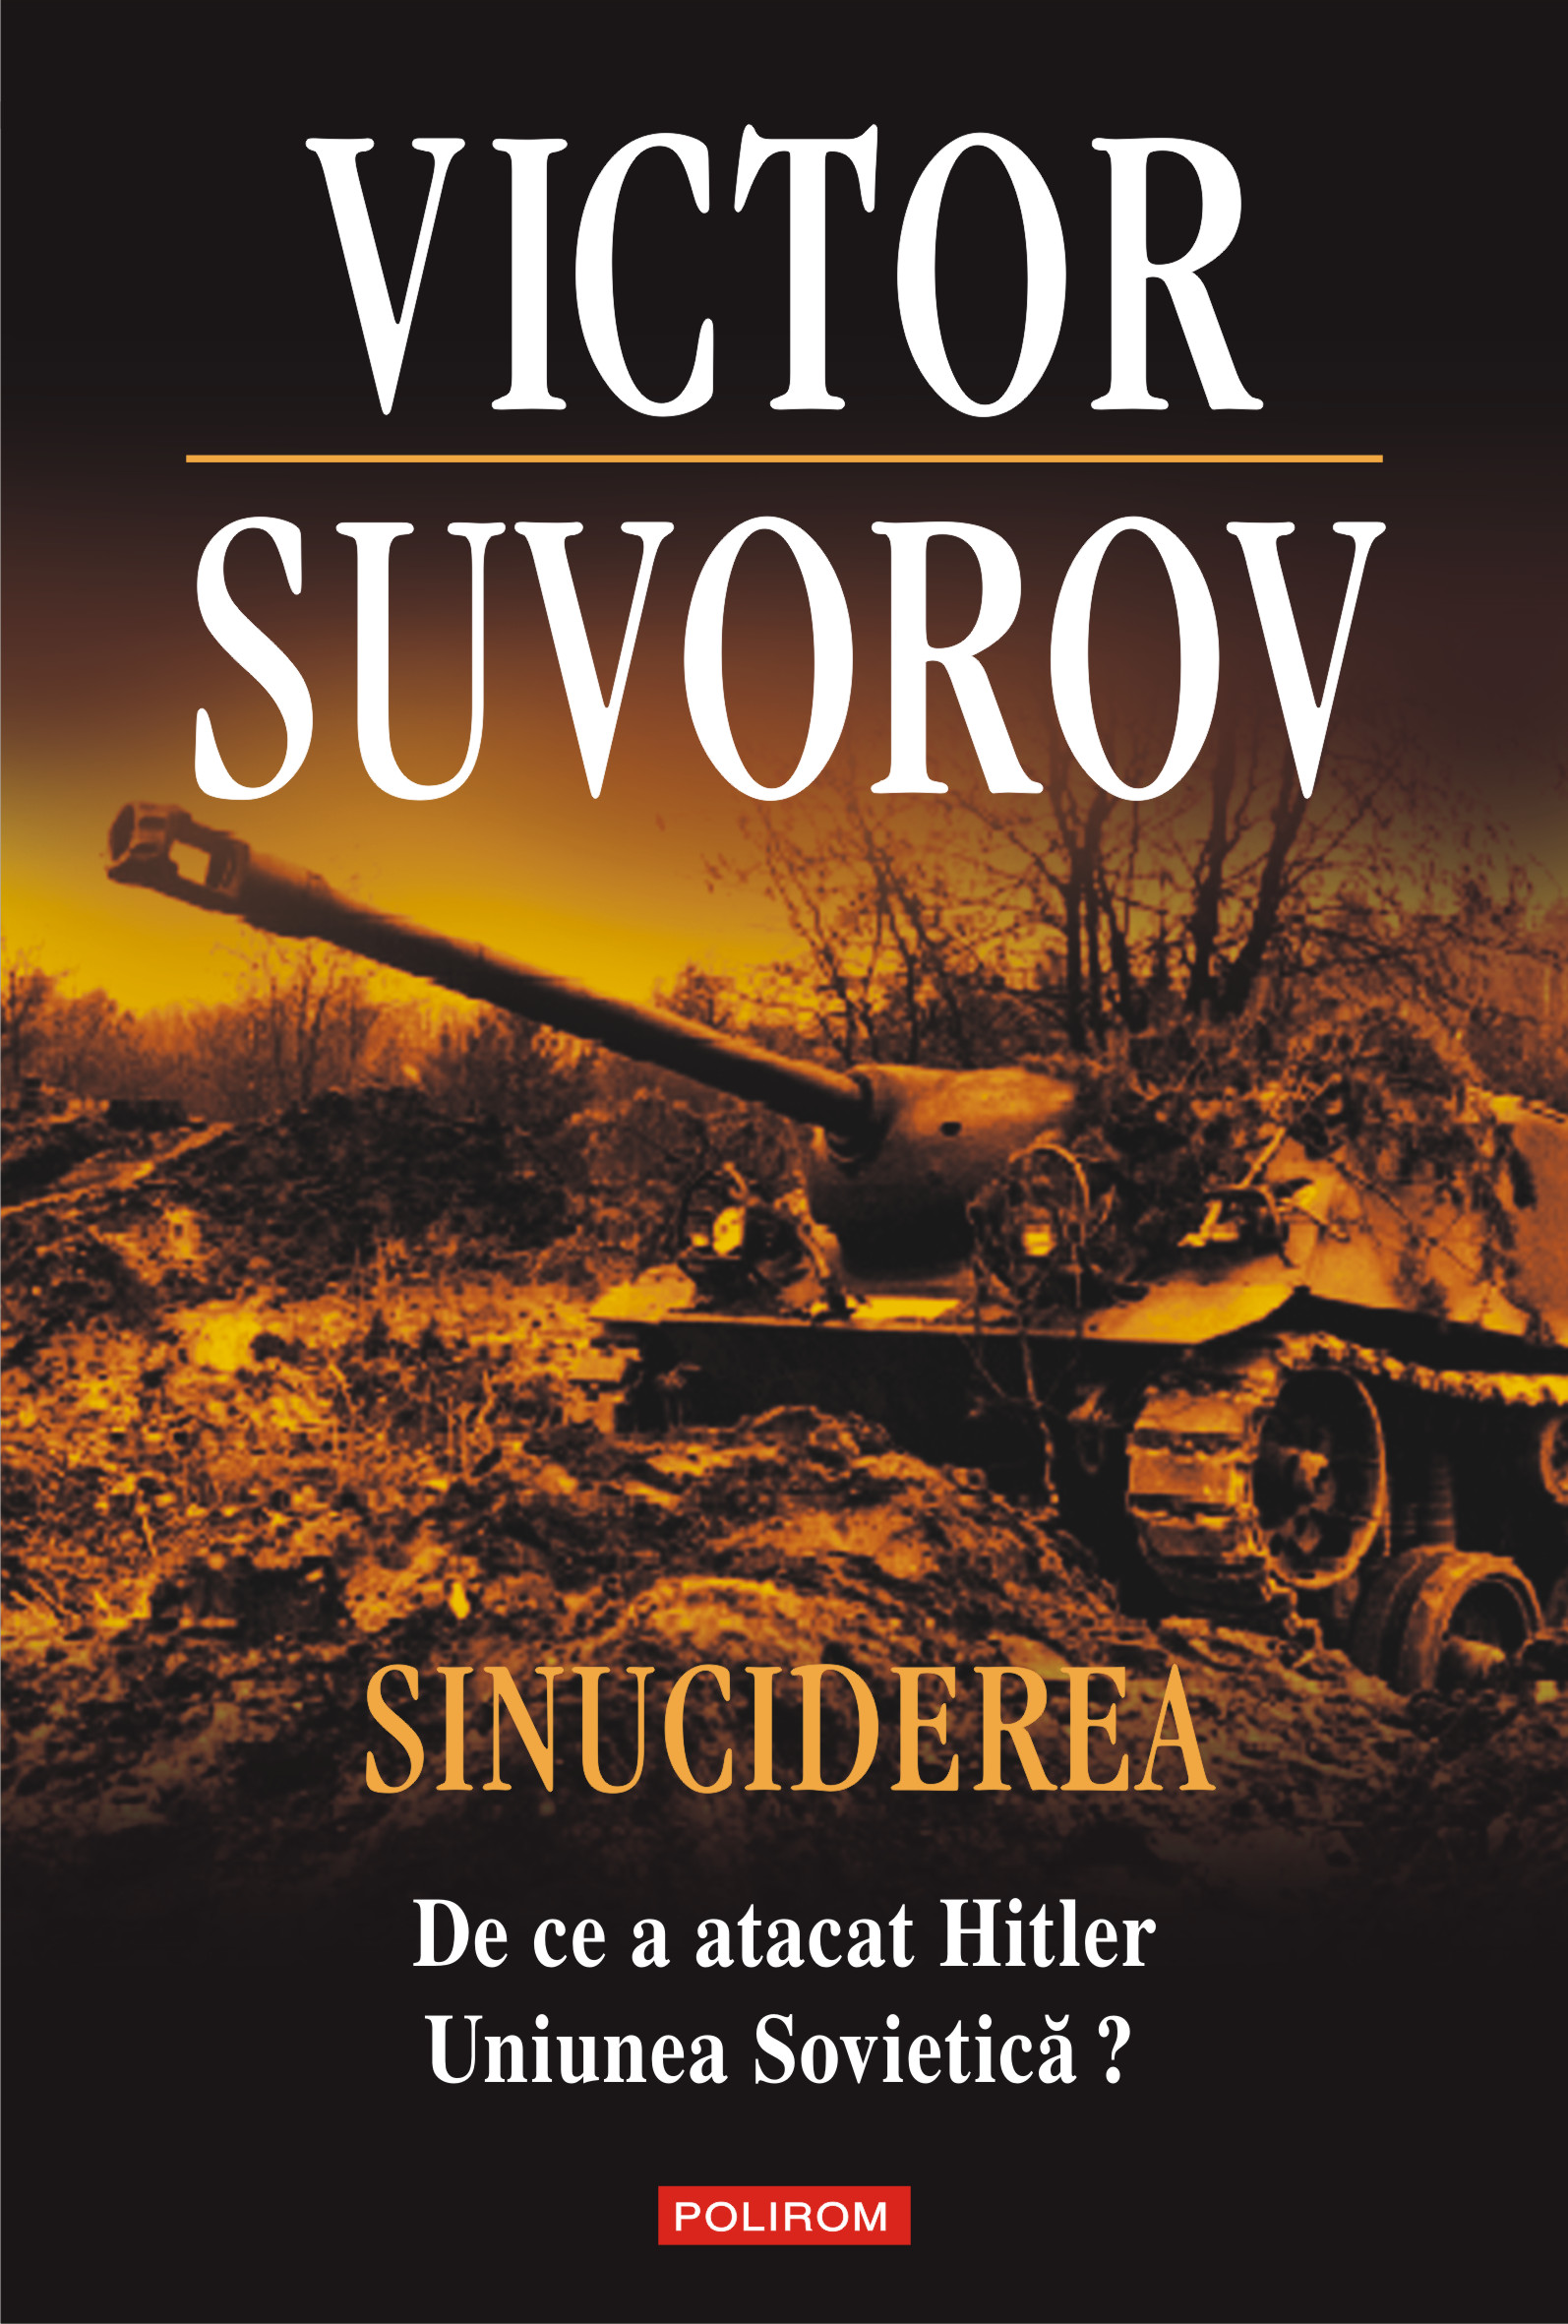 eBook Sinuciderea. De ce a atacat Hitler Uniunea Sovietica - Victor Suvorov